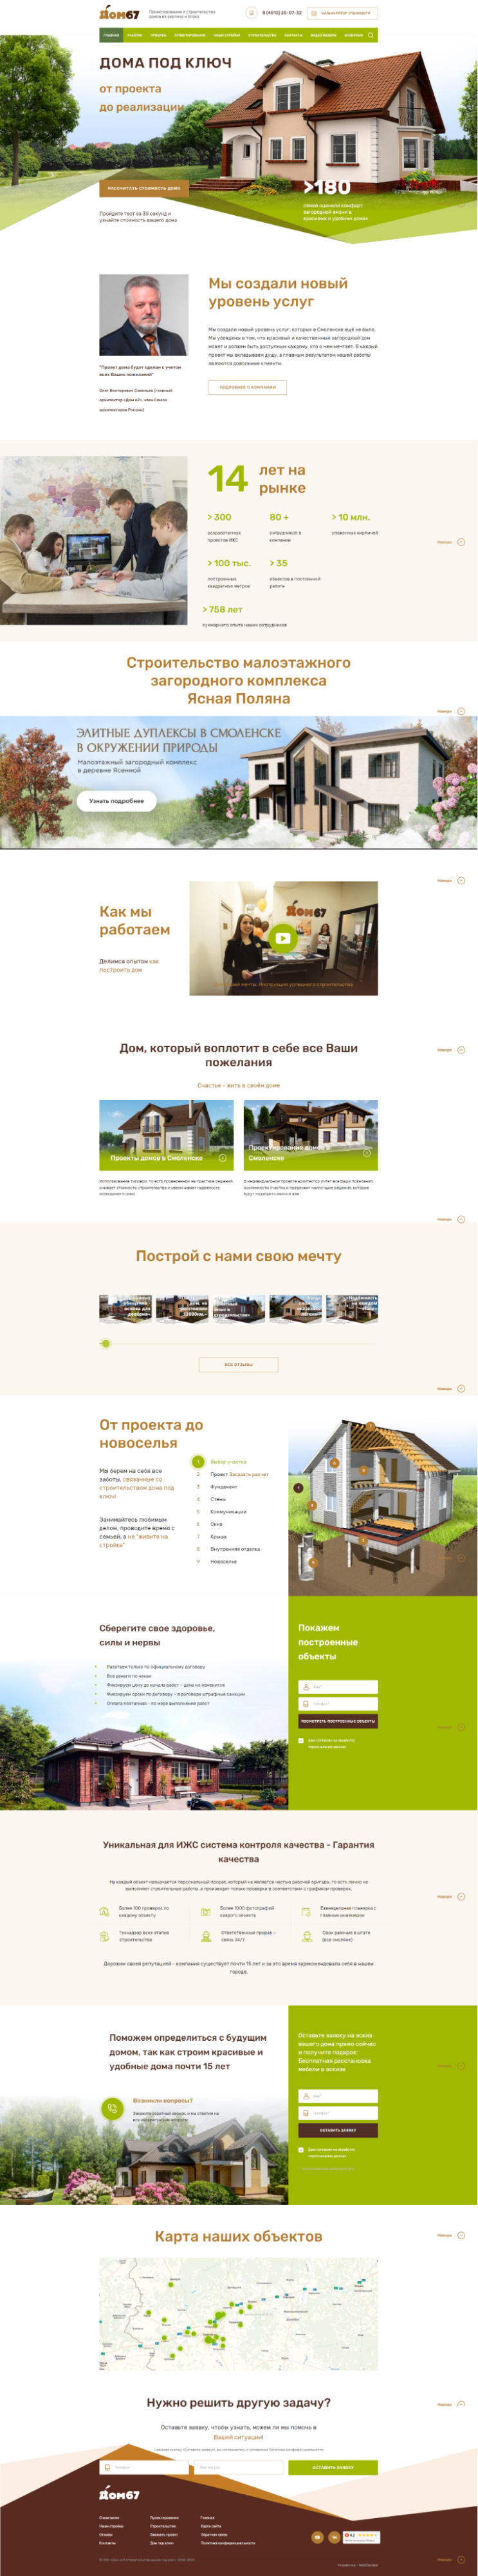 Редизайн и модернизация сайта для строительной компании